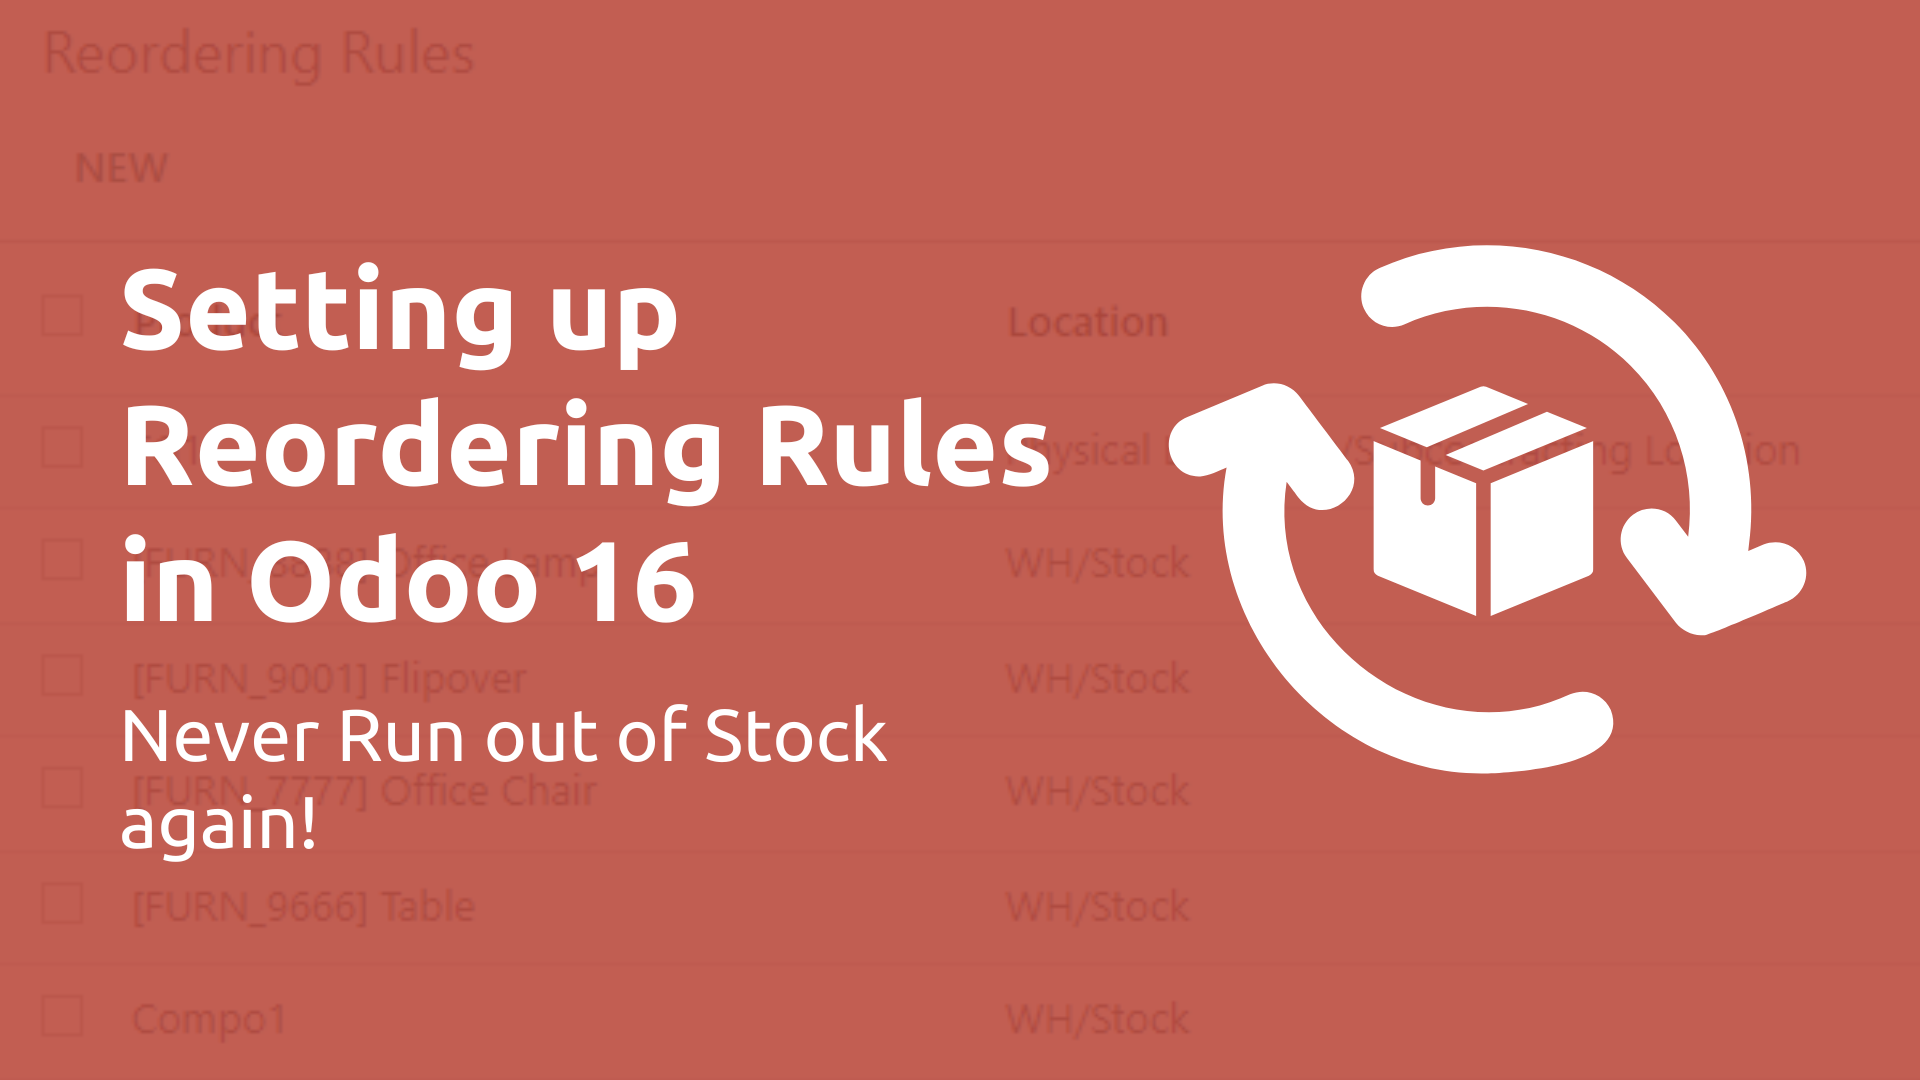 Odoo 16 Reordering Rules Setup